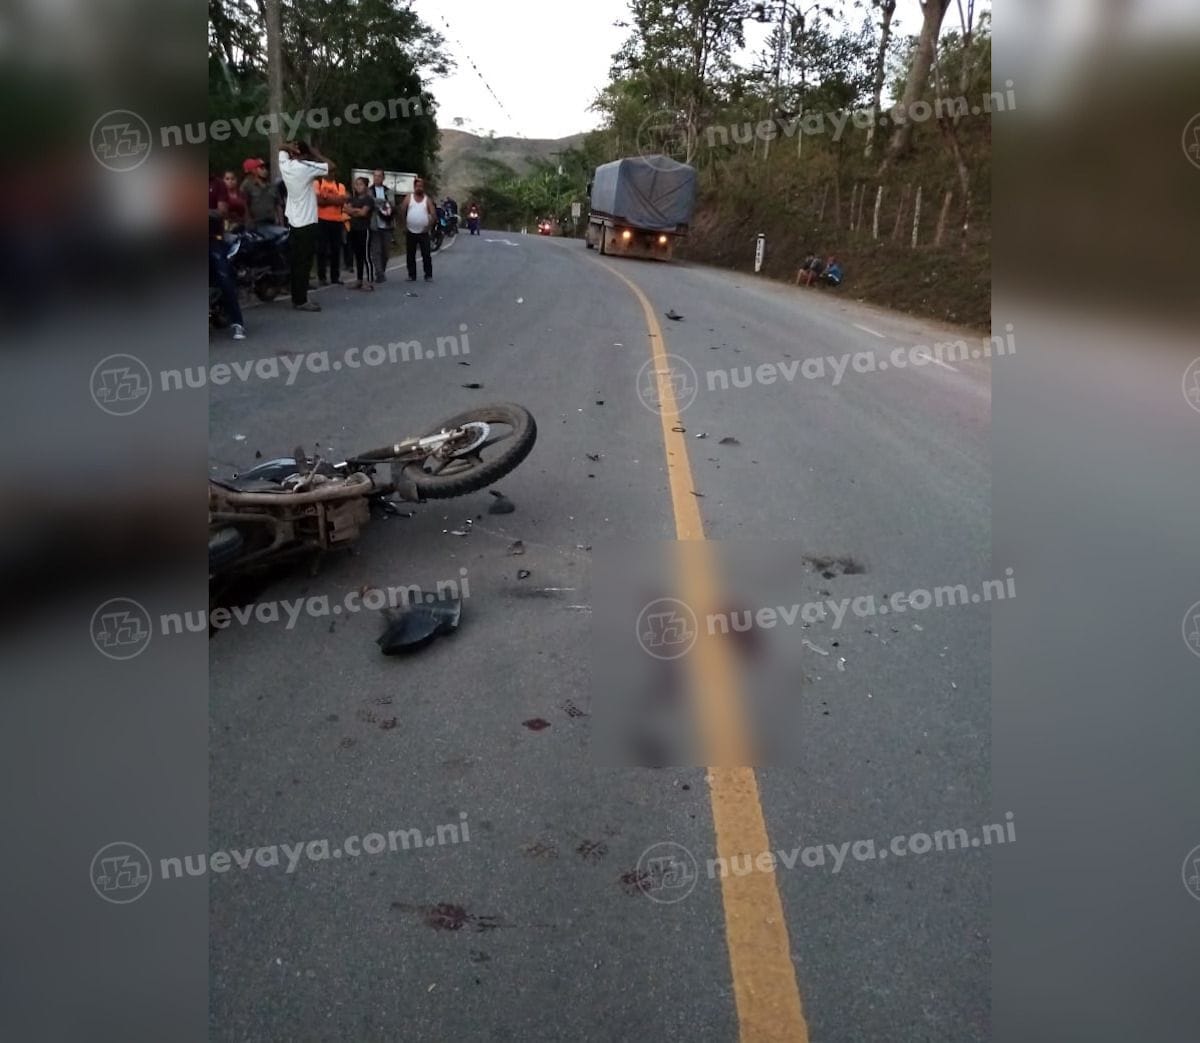 El accidente ocurrió el sábado en la comarca La Marañosa